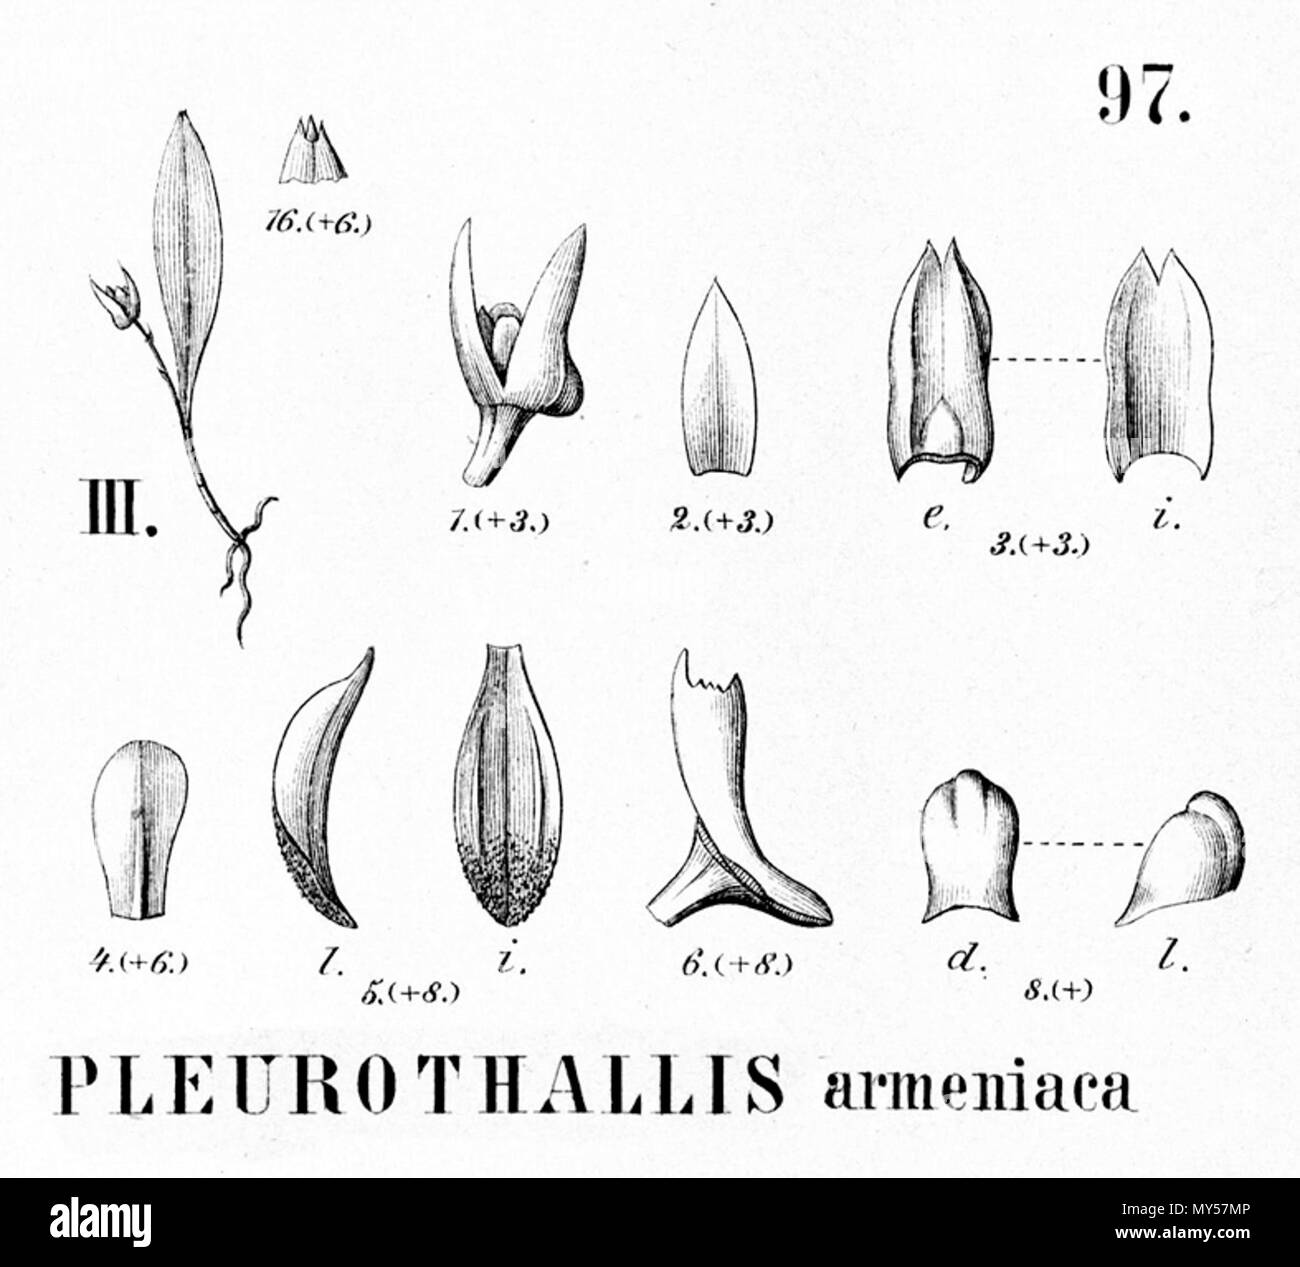 . Illustration of Pleurothallis armeniaca . 1896. Alfred Cogniaux (1841 - 1916) 426 Pleurothallis armeniaca - cutout from Flora Brasiliensis 3-4-97 fig III Stock Photo